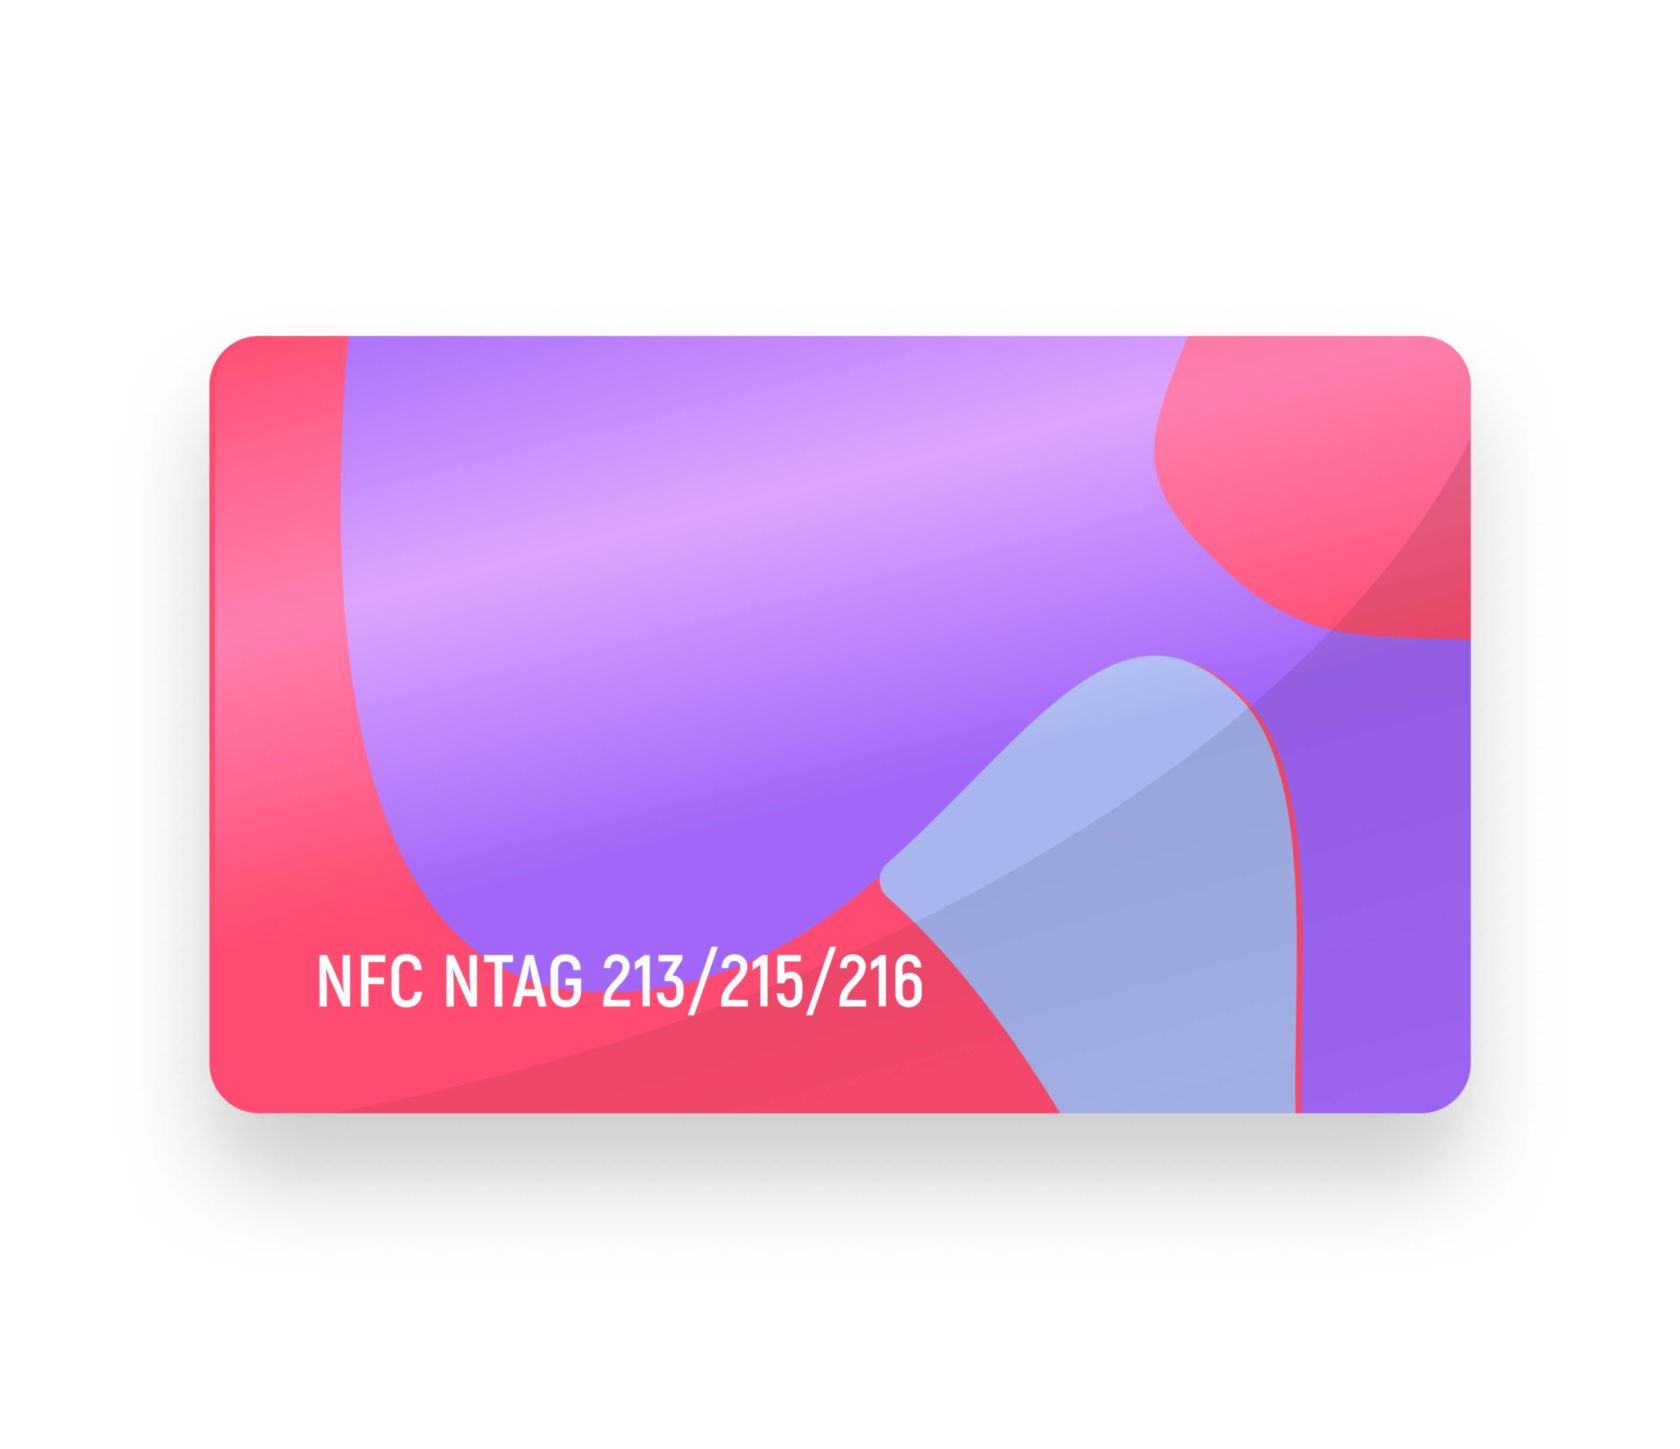 NFC NTAG 213/215/216